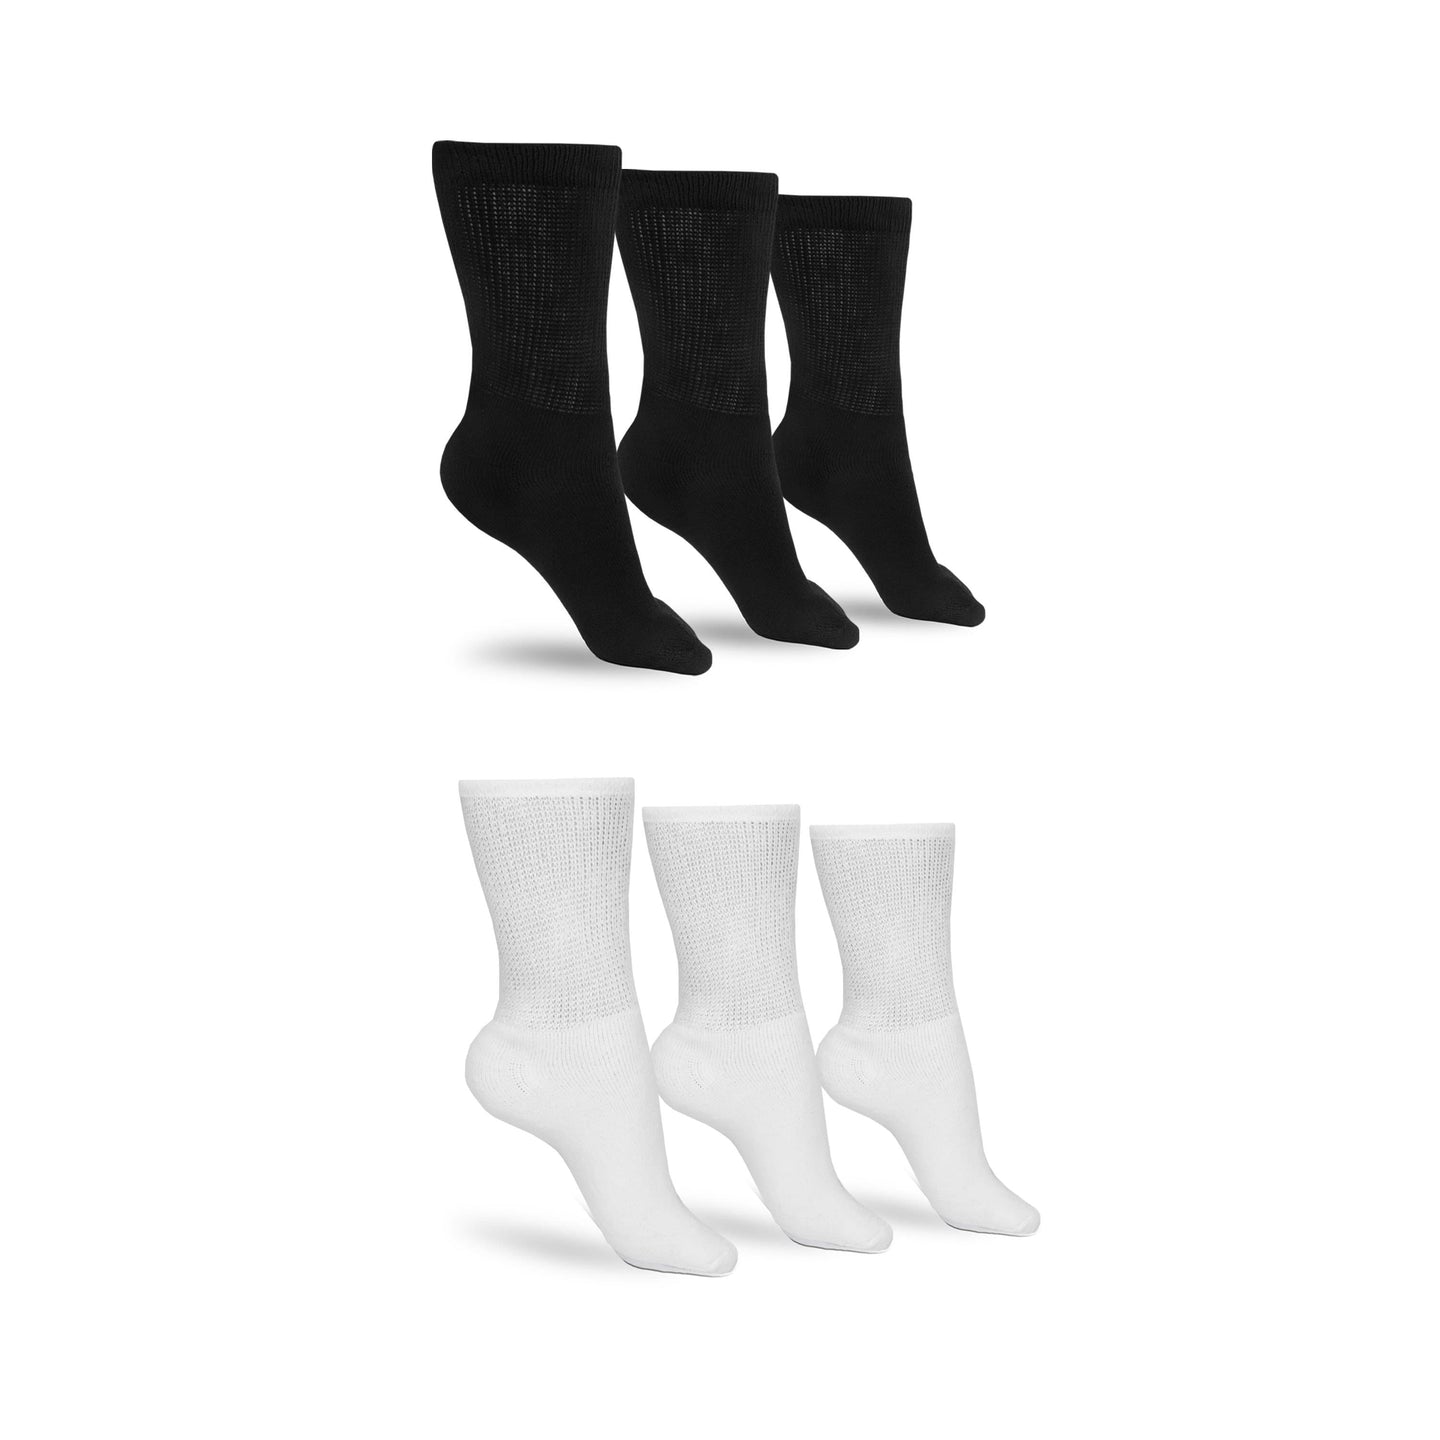 Men's Cotton Diabetic Crew Socks (Assorted)